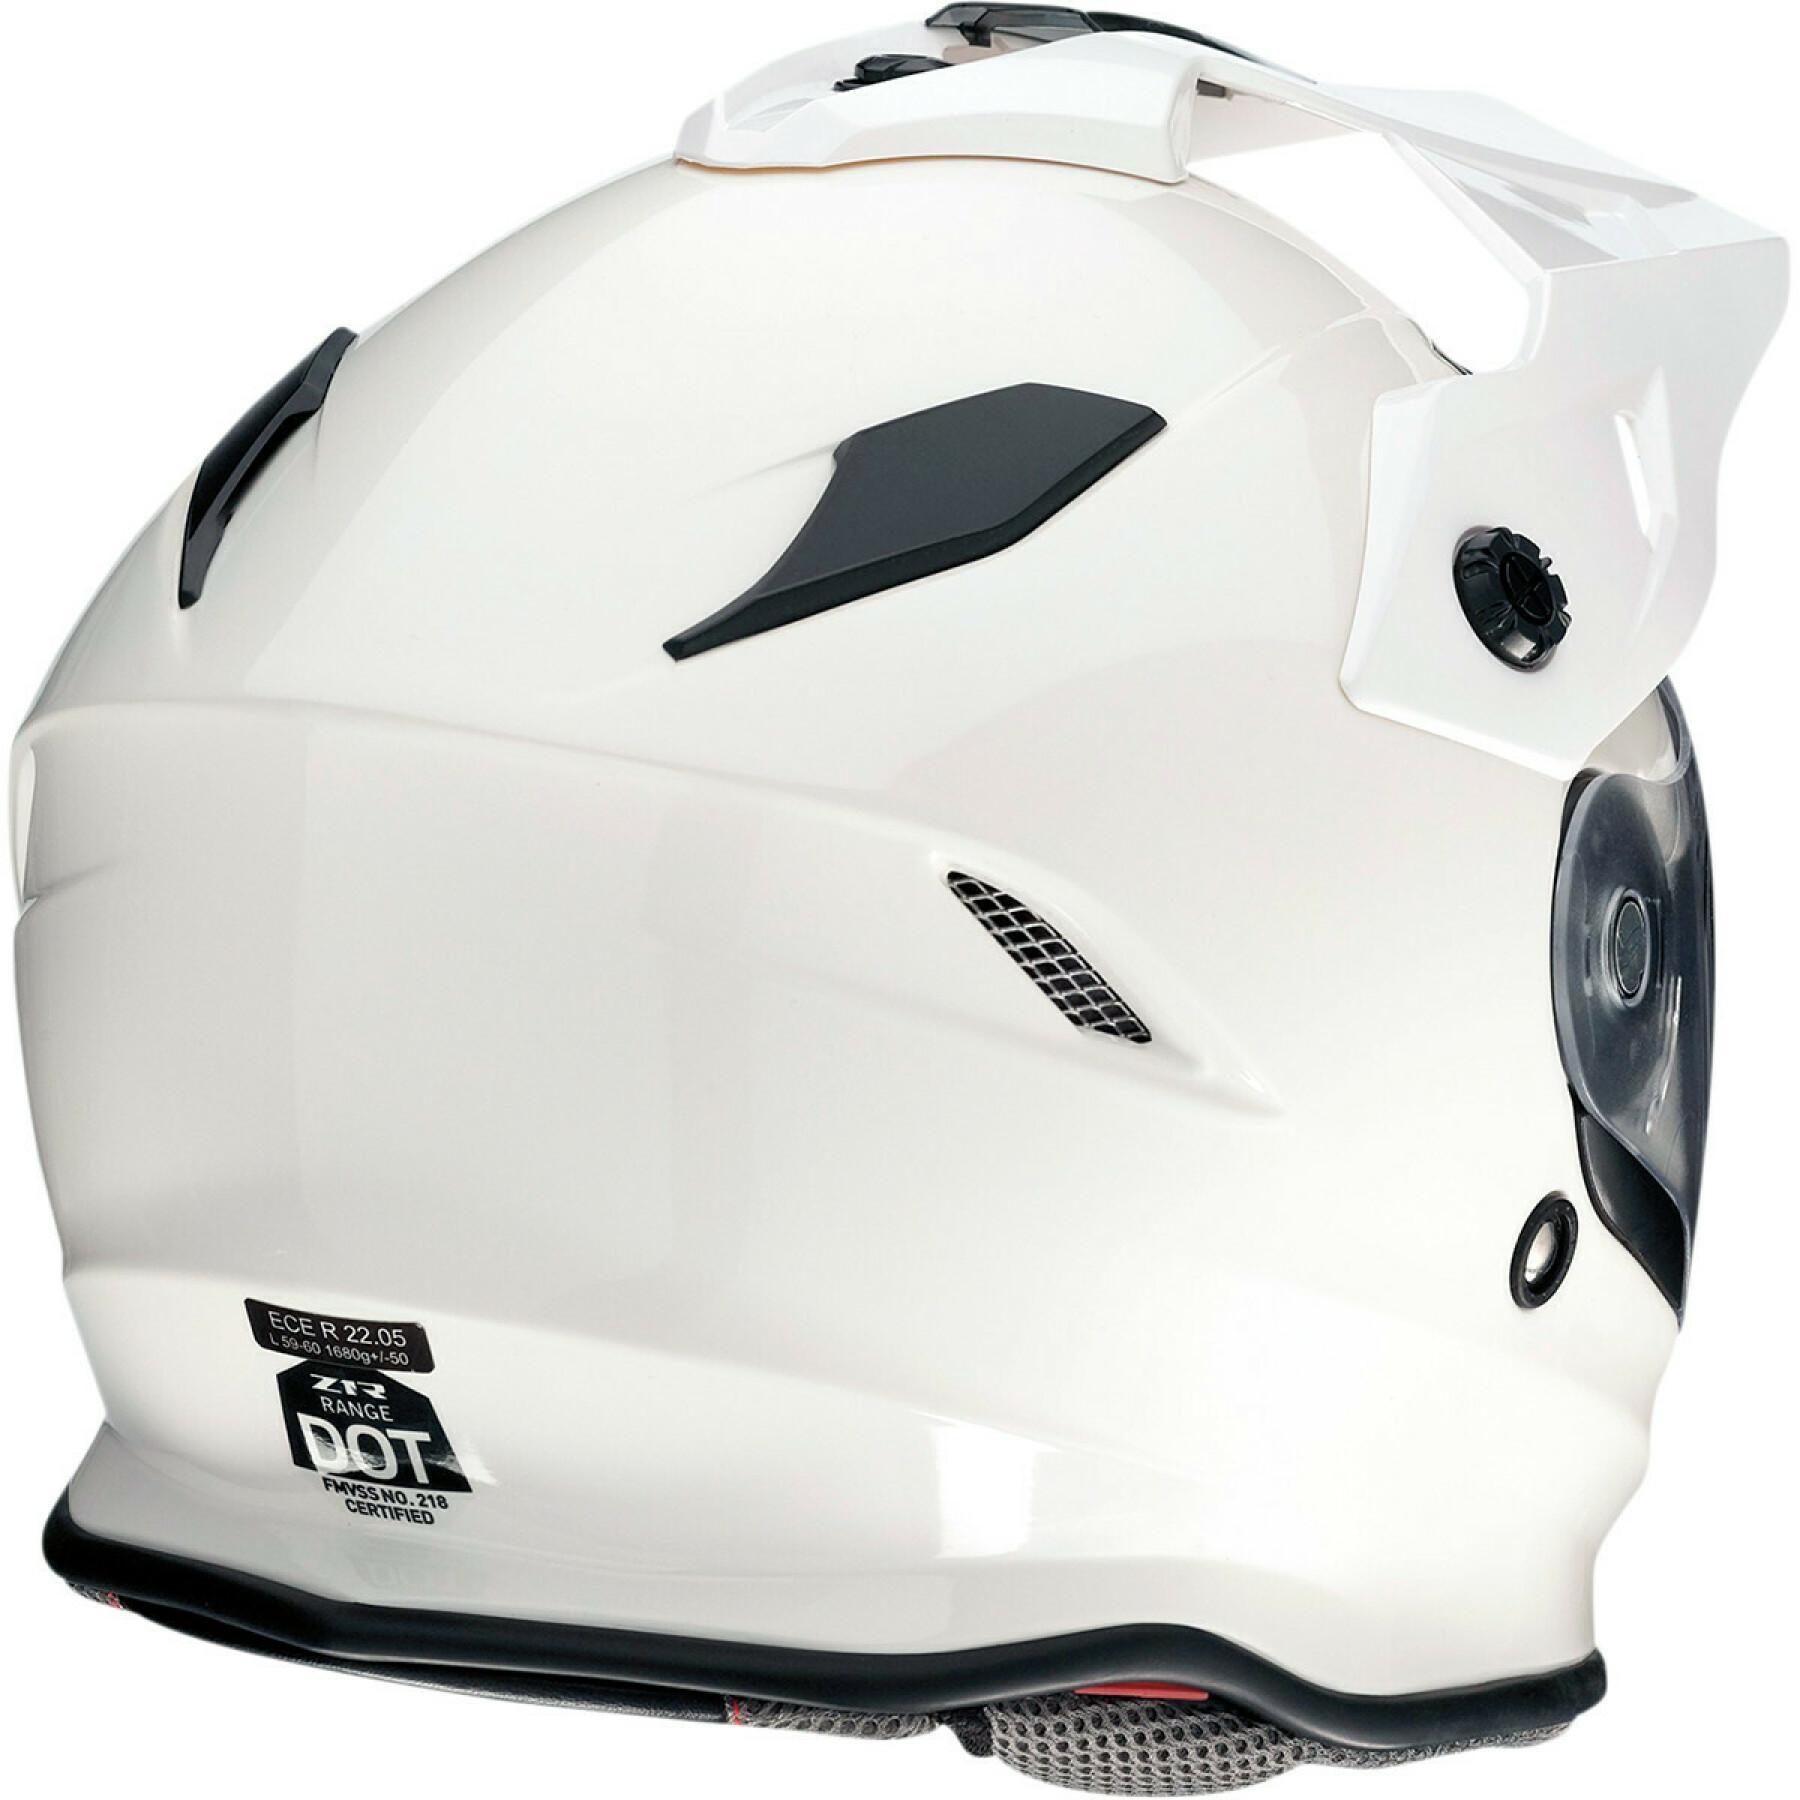 Modular motorcycle helmet Z1R range white